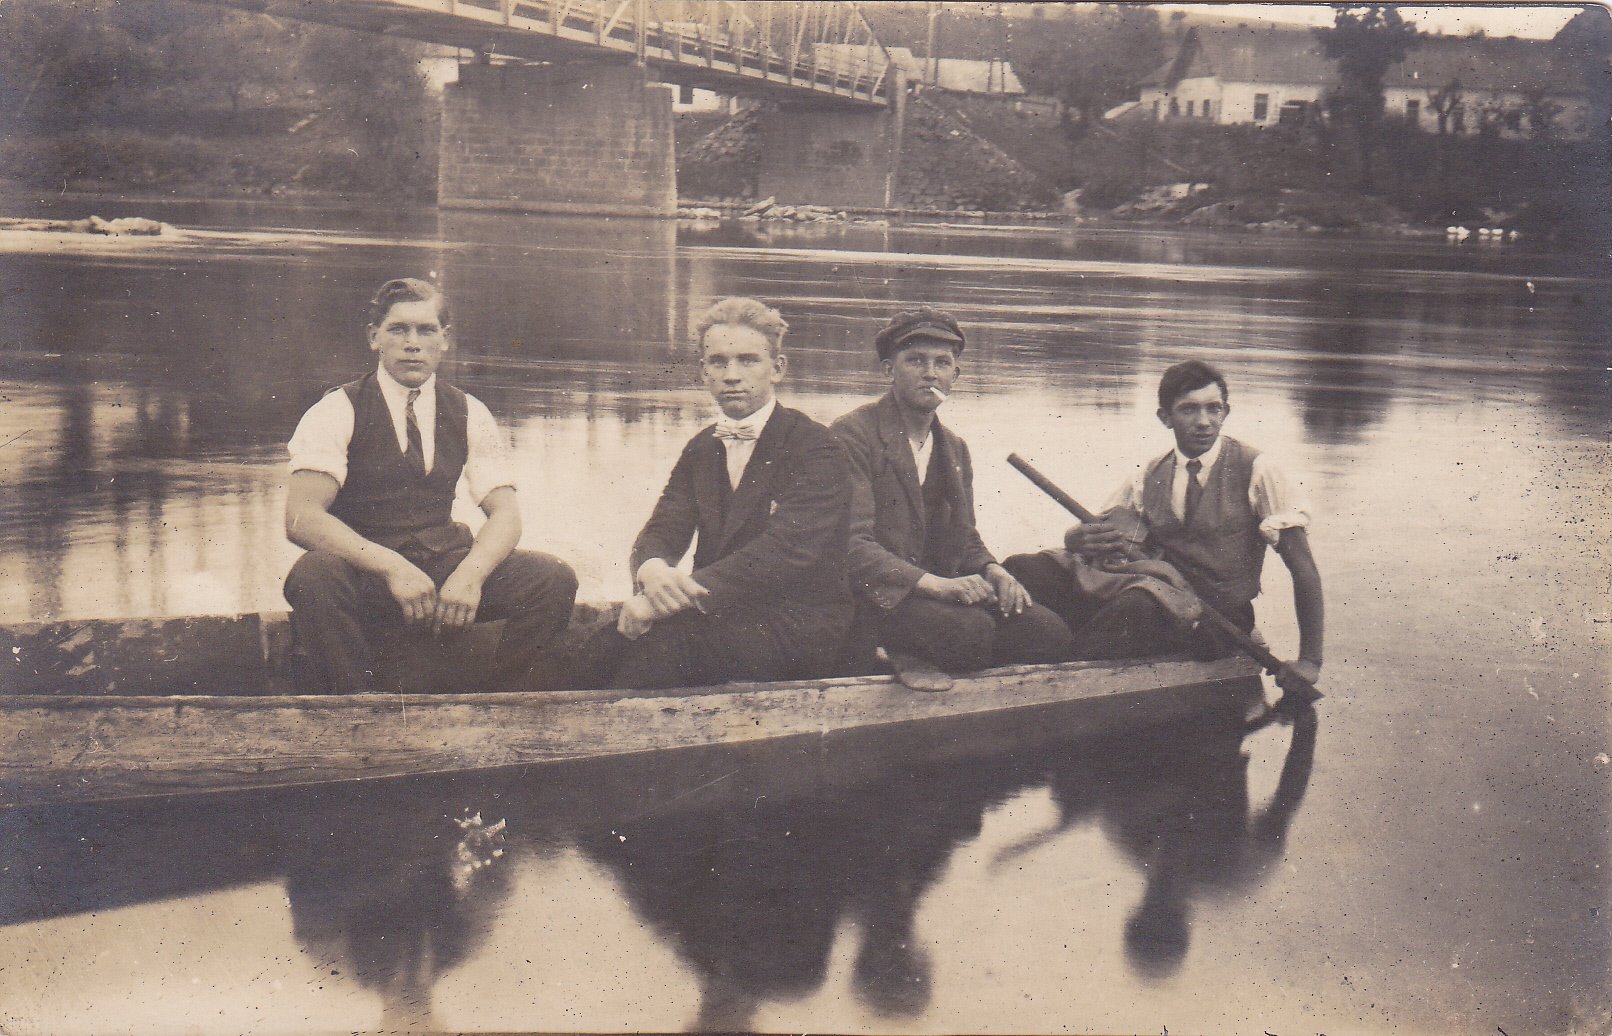 plavba na drevenej lodi pod mostom v Púchove v r. 1936 (Laco Pribiš, Karol Demáček, Berto Kemény a neznámy džentlmen)